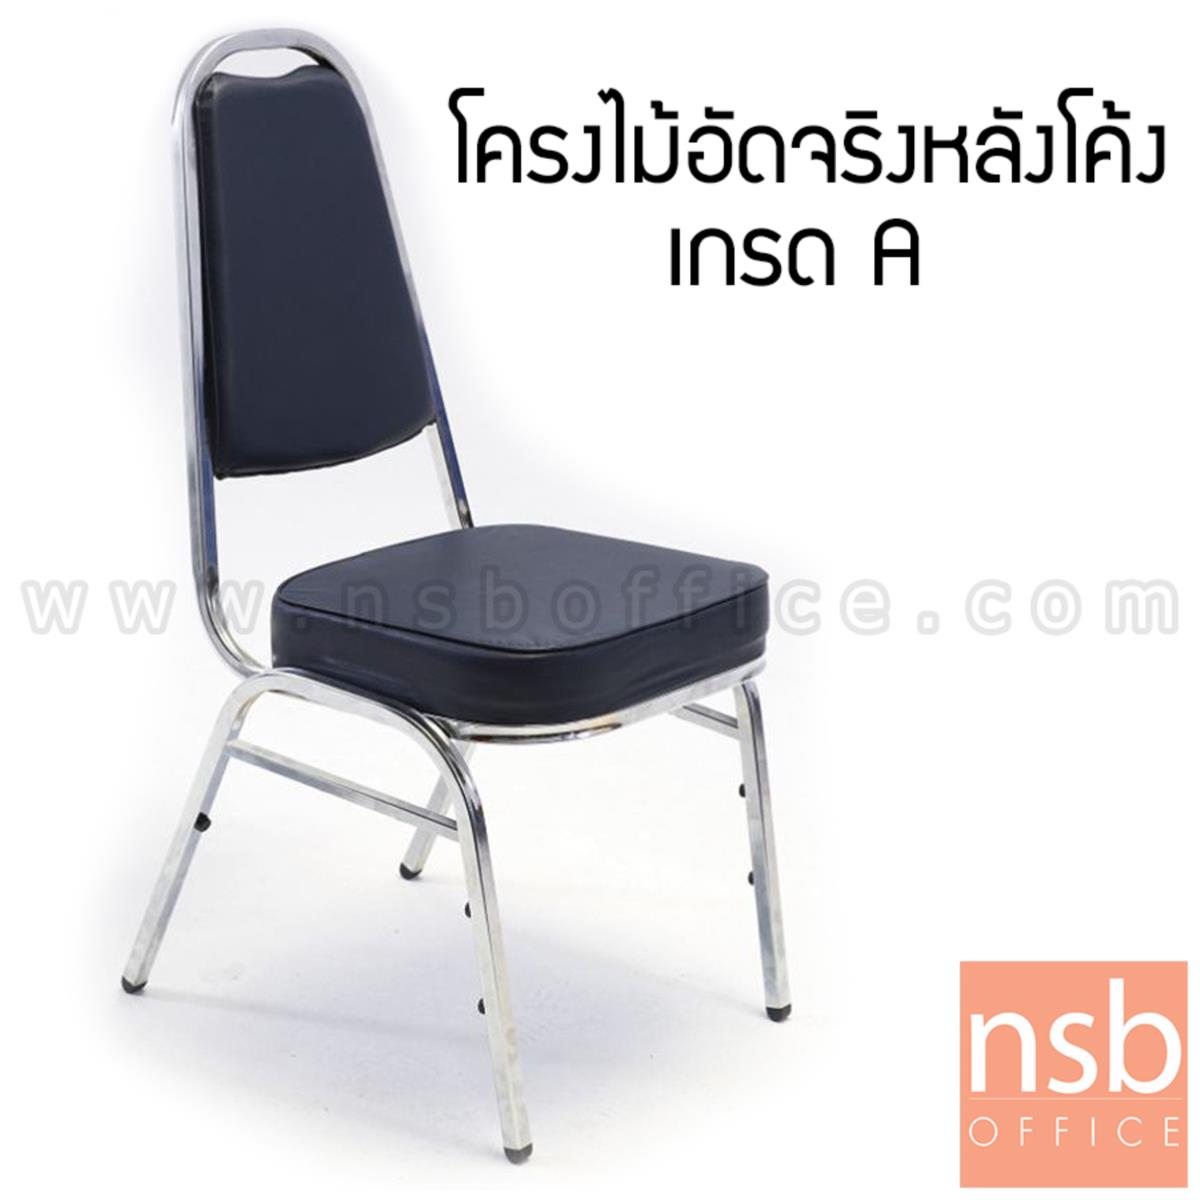 B05A129:เก้าอี้อเนกประสงค์จัดเลี้ยง รุ่น West (เวสท์) ขนาด 86H cm. ขาเหล็ก 